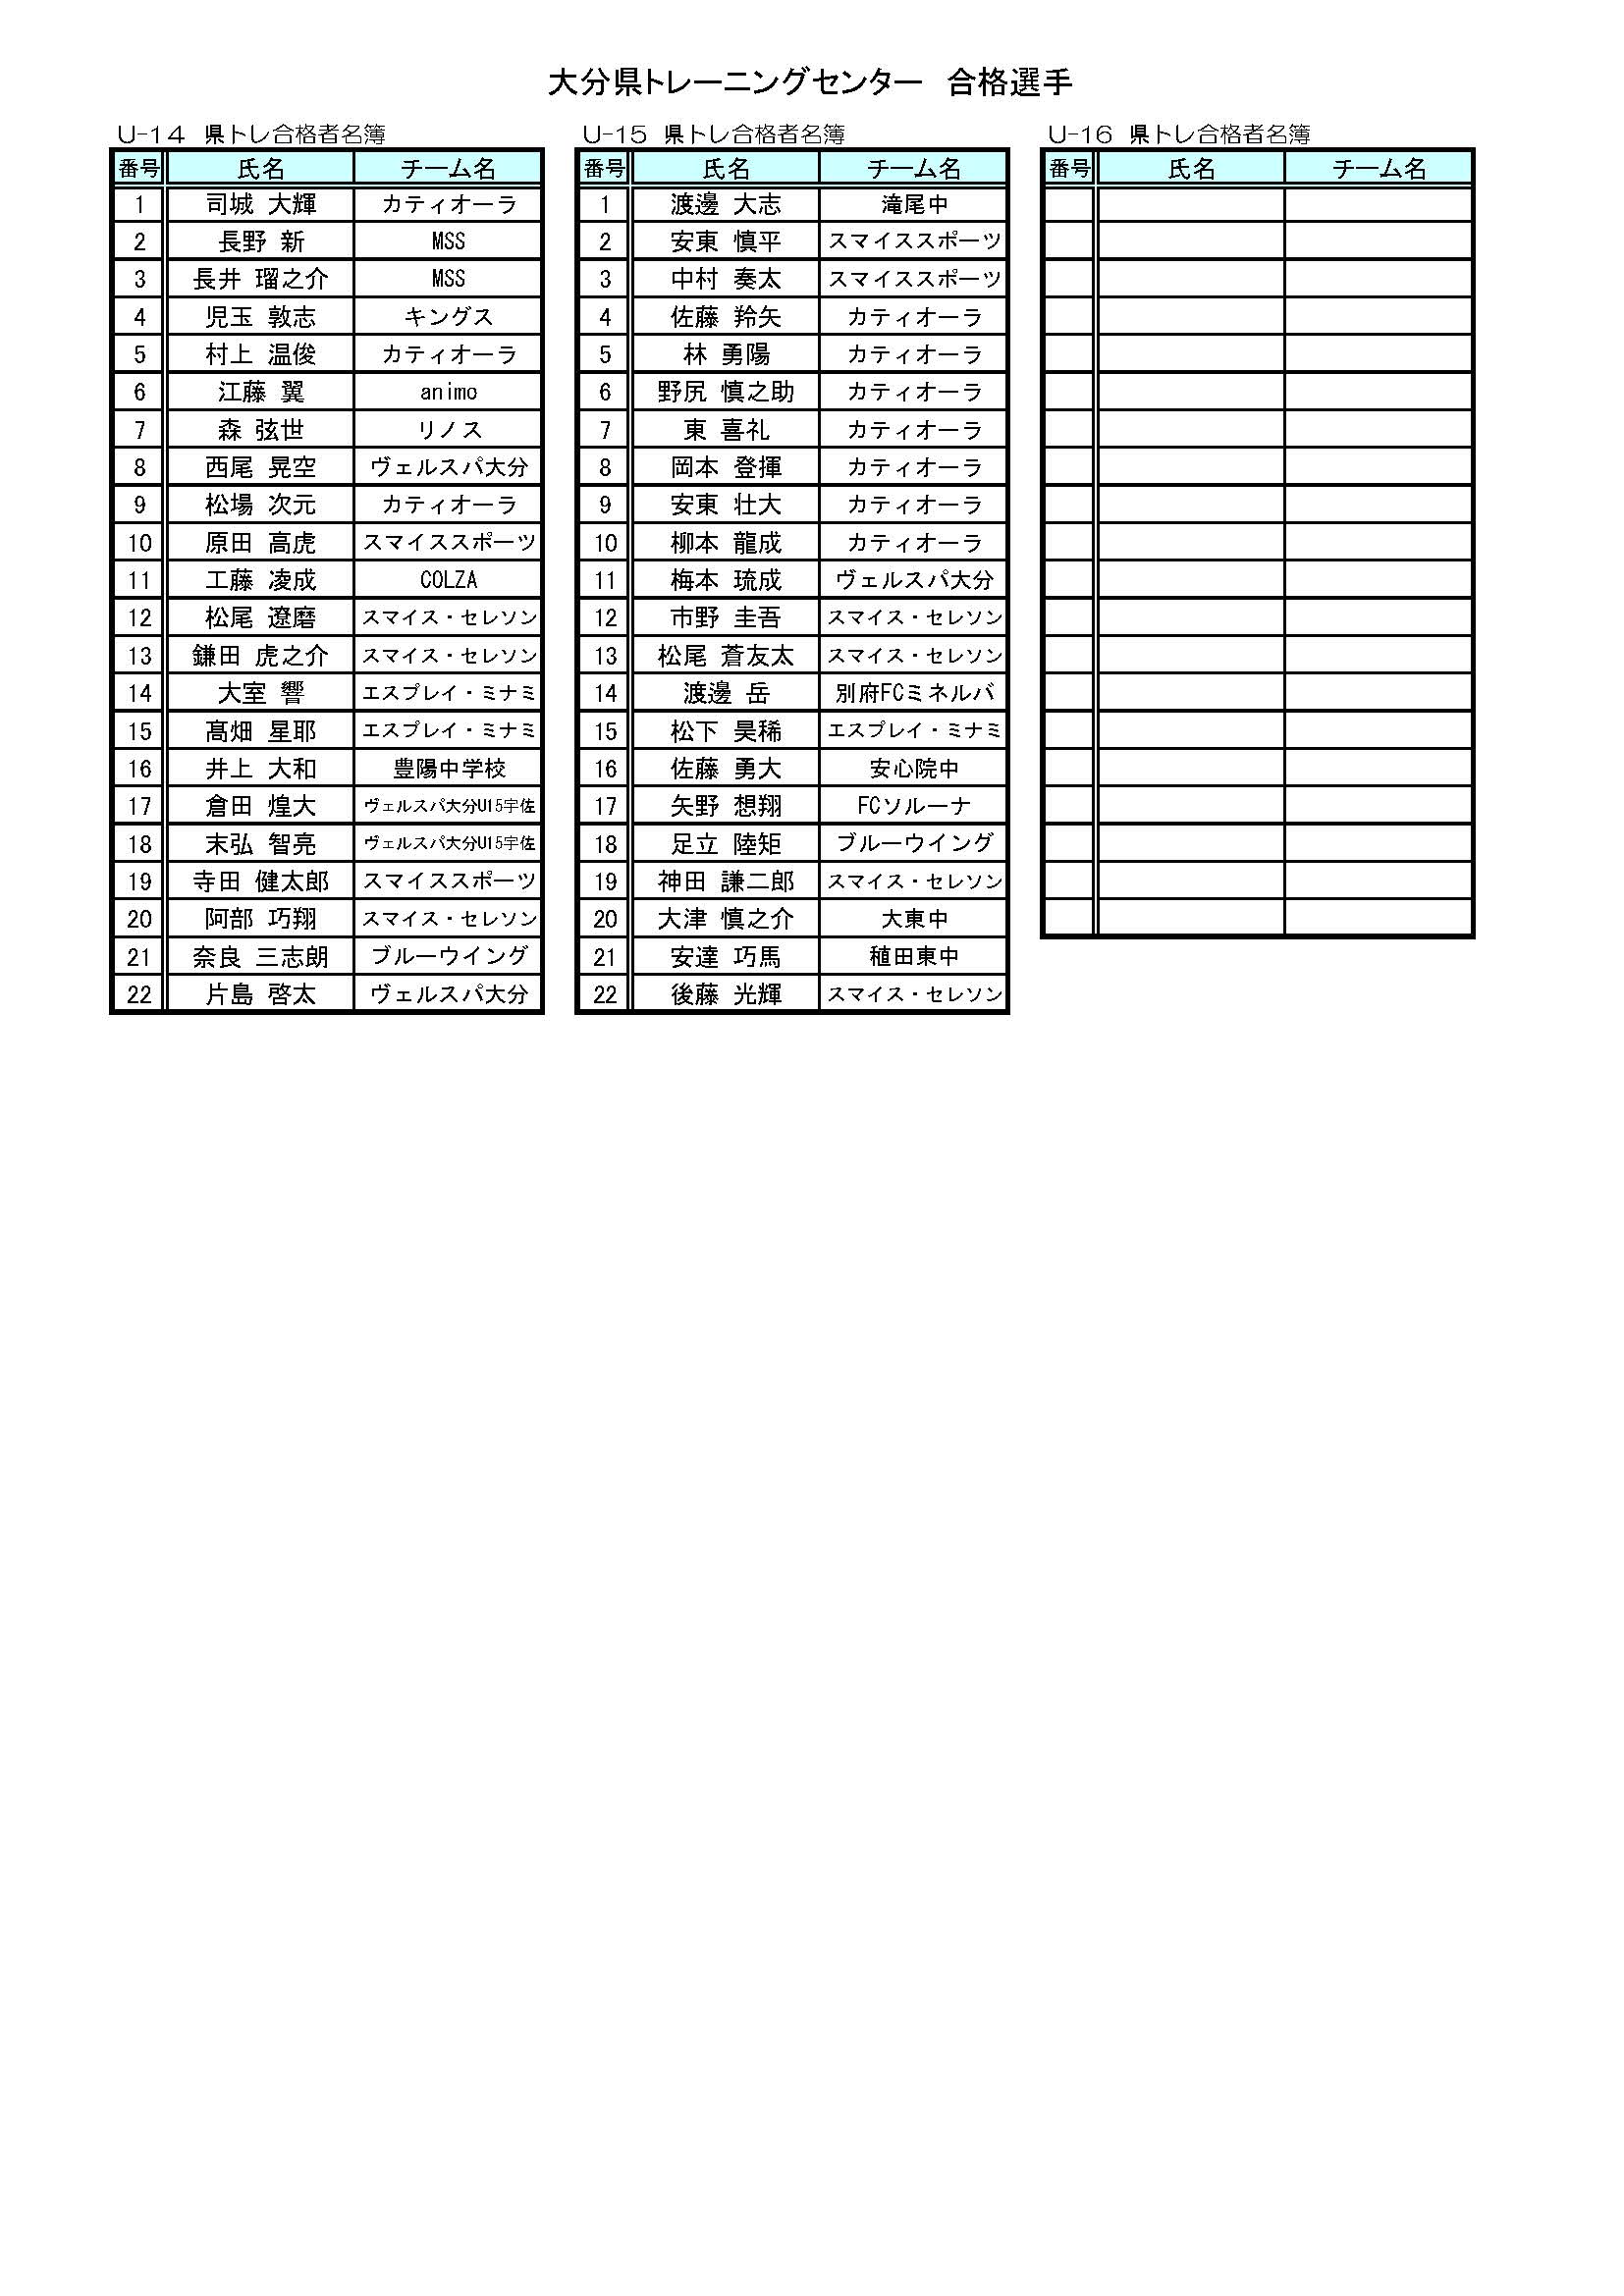 21年度 大分県トレセン男子選考合格者名簿 追加者含む 一般社団法人大分県サッカー協会 Ofa